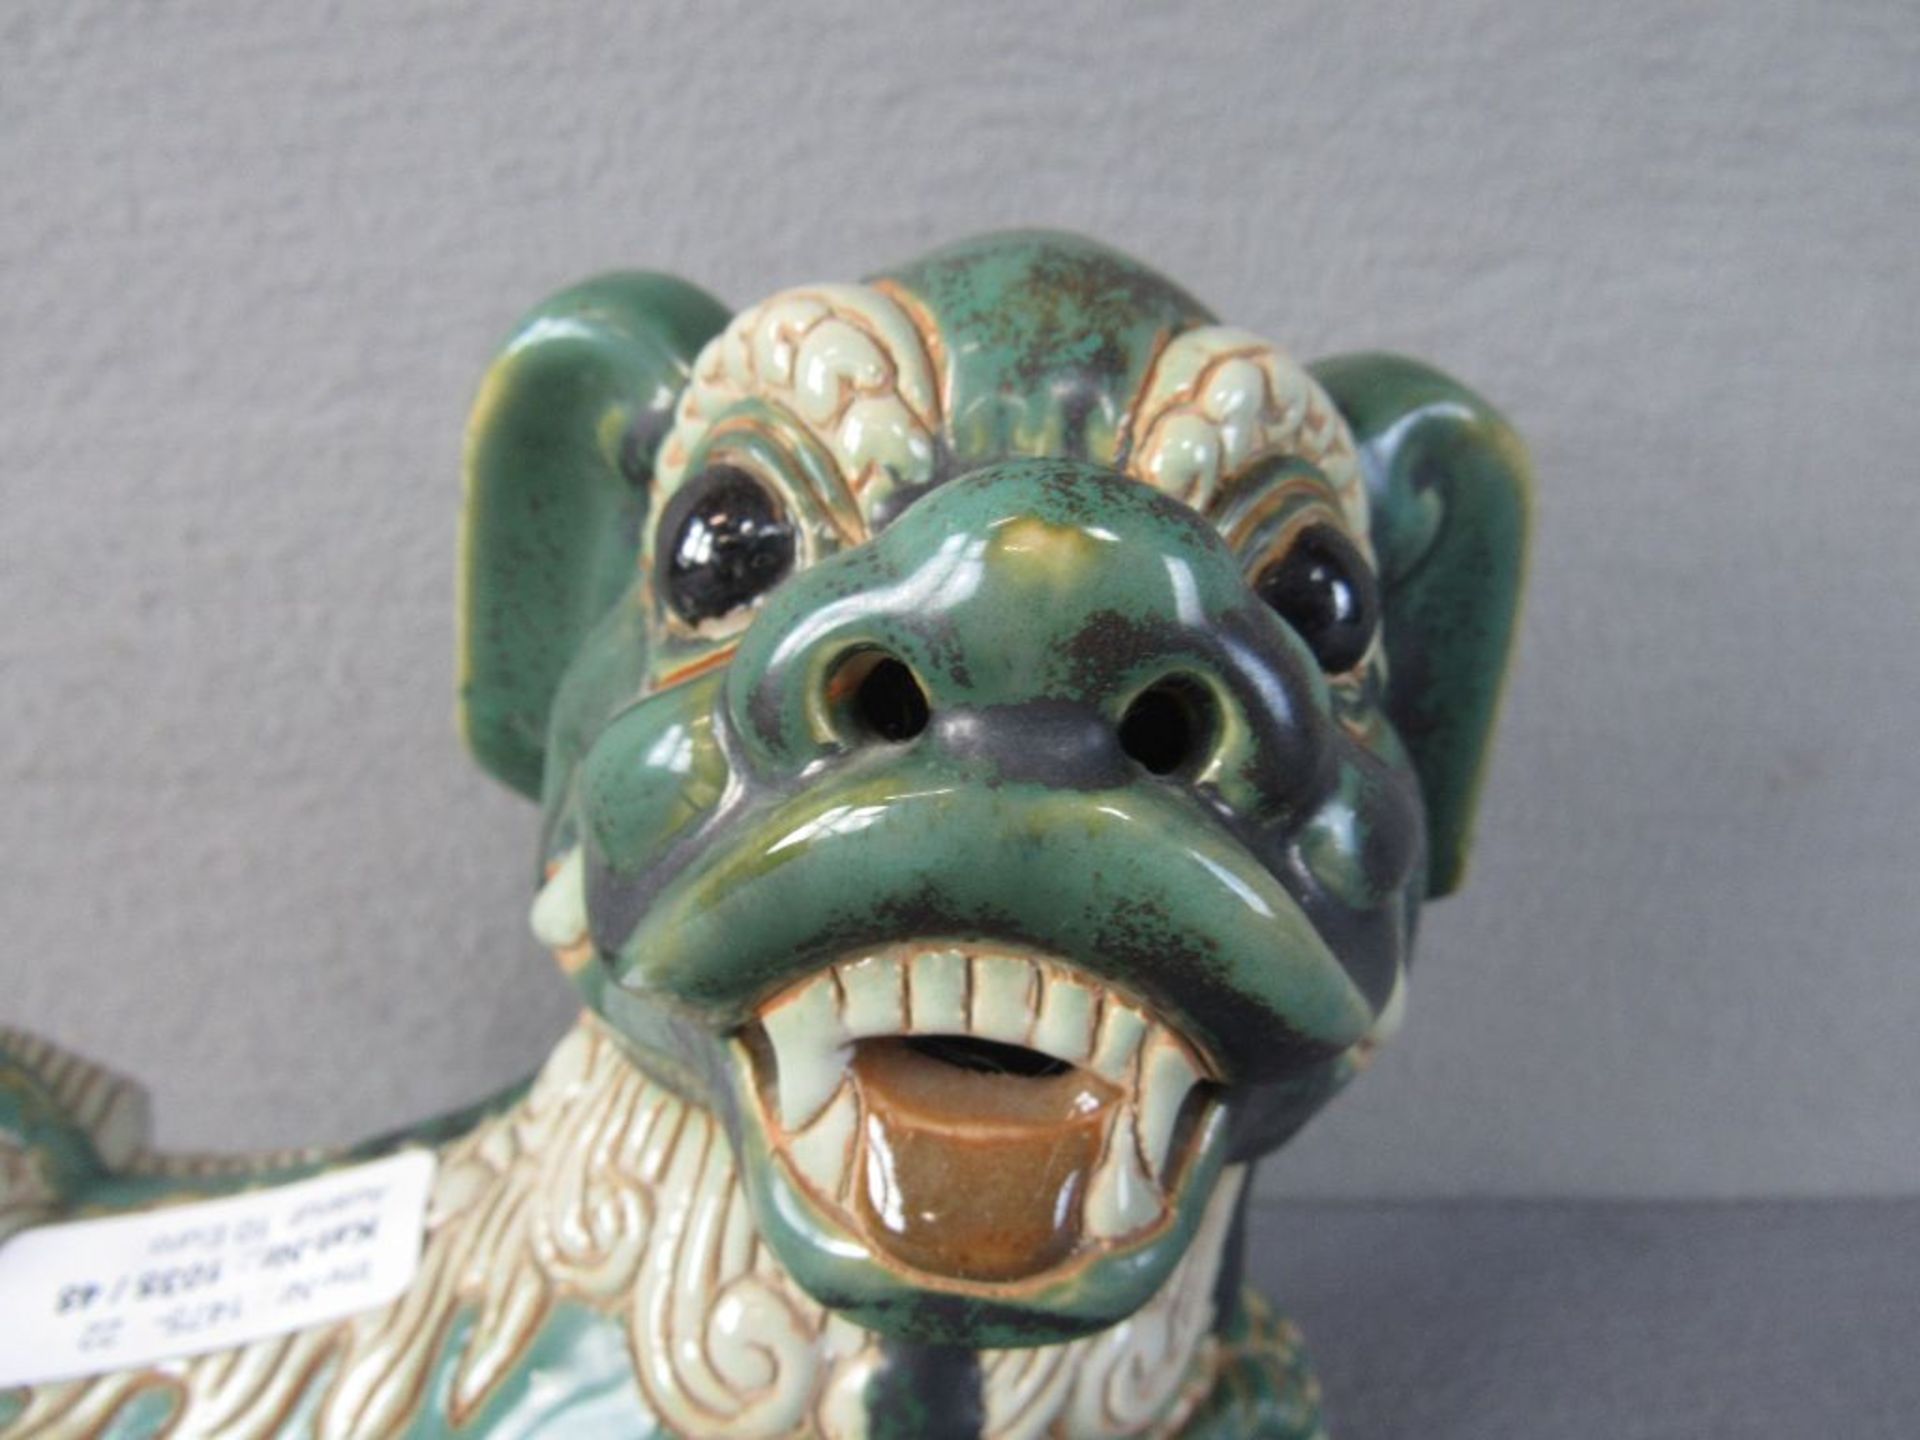 Chinesischer Fu Hund signiert Thary oder ähnlich lasierte Keramik 25cm lang - Bild 2 aus 6